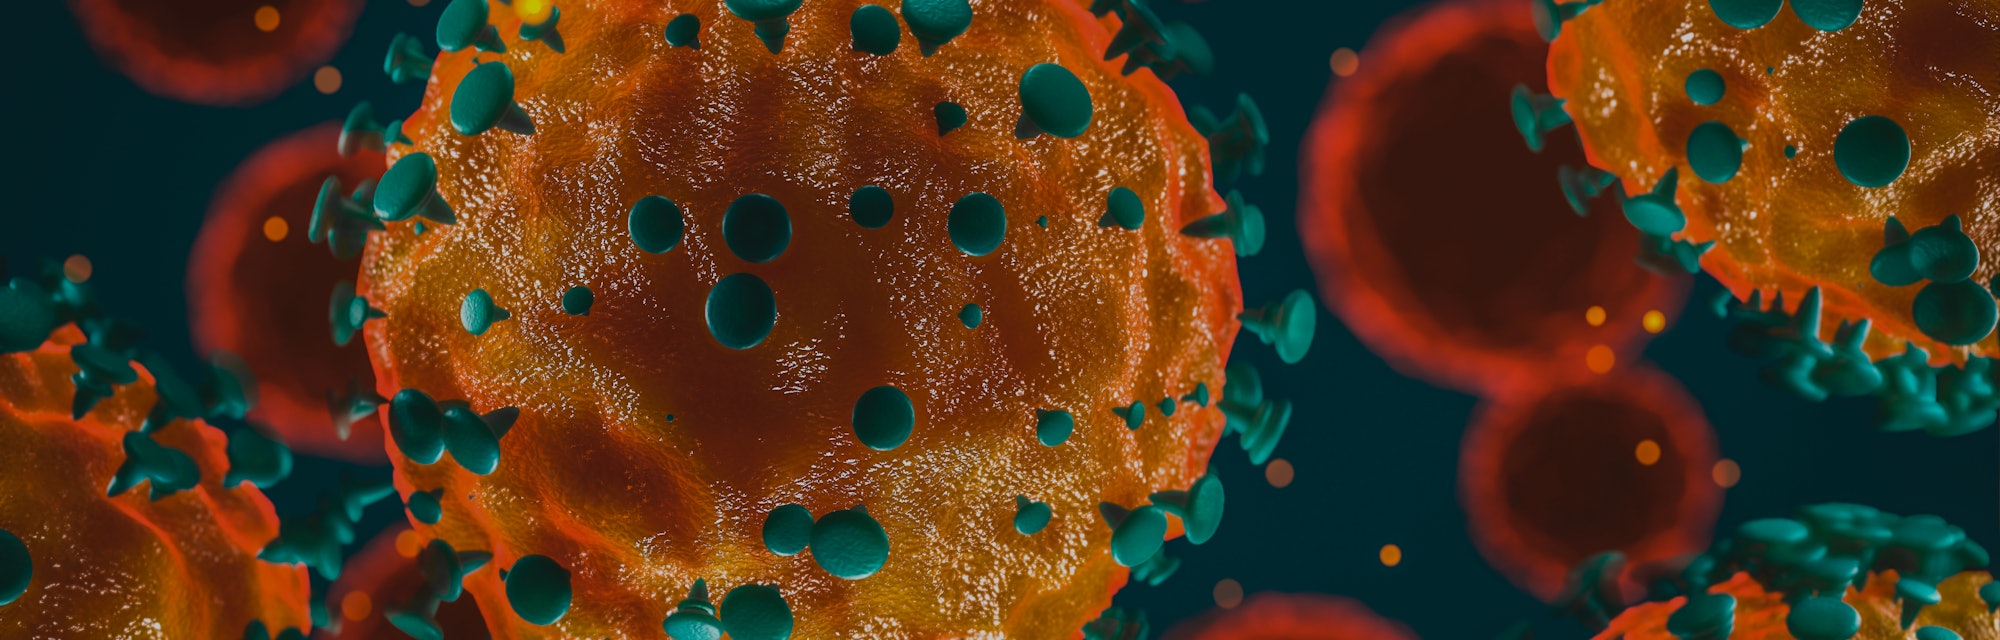 Coronavirus 2019-nCov novel coronavirus concept resposible for illness outbreak and coronaviruses in...